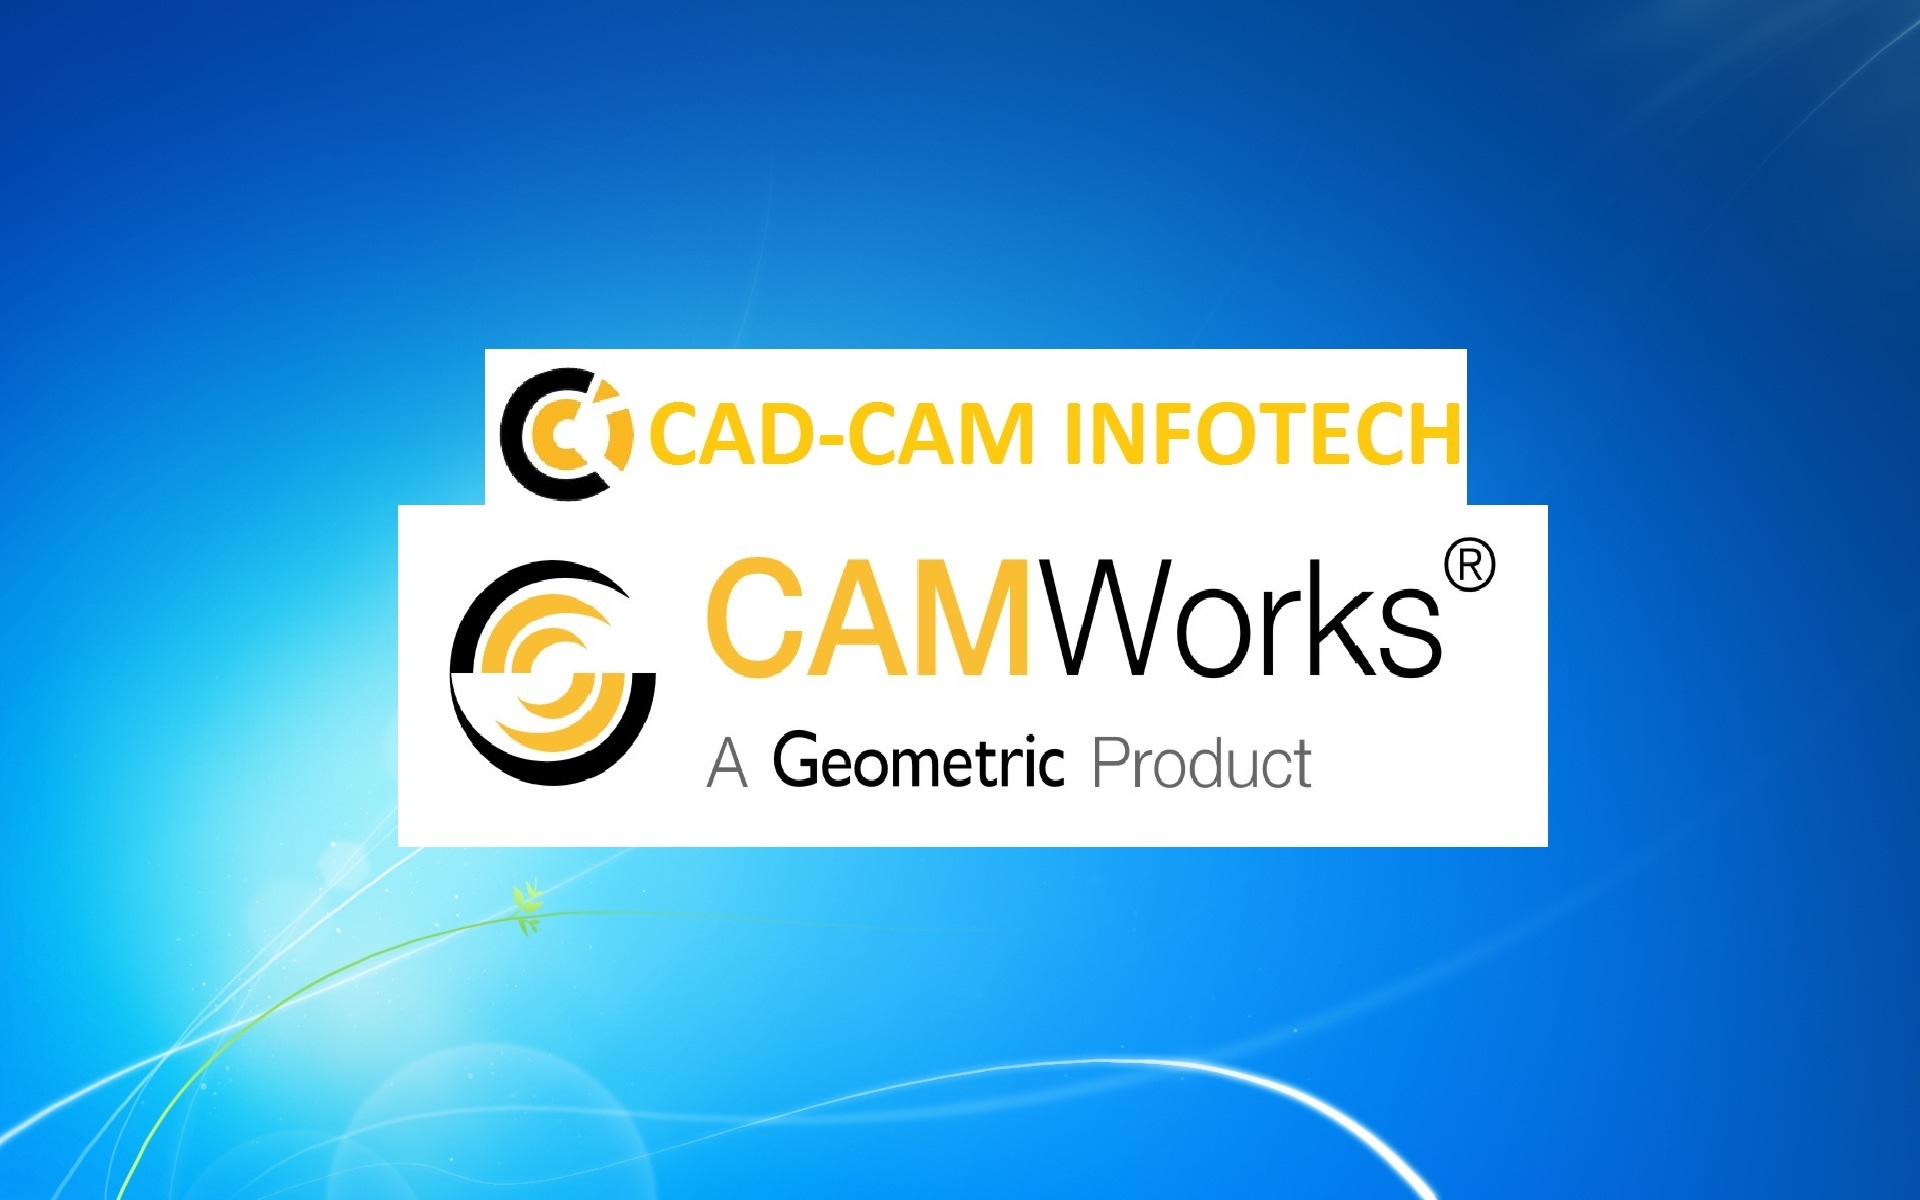 CAD-CAM INFOTECH